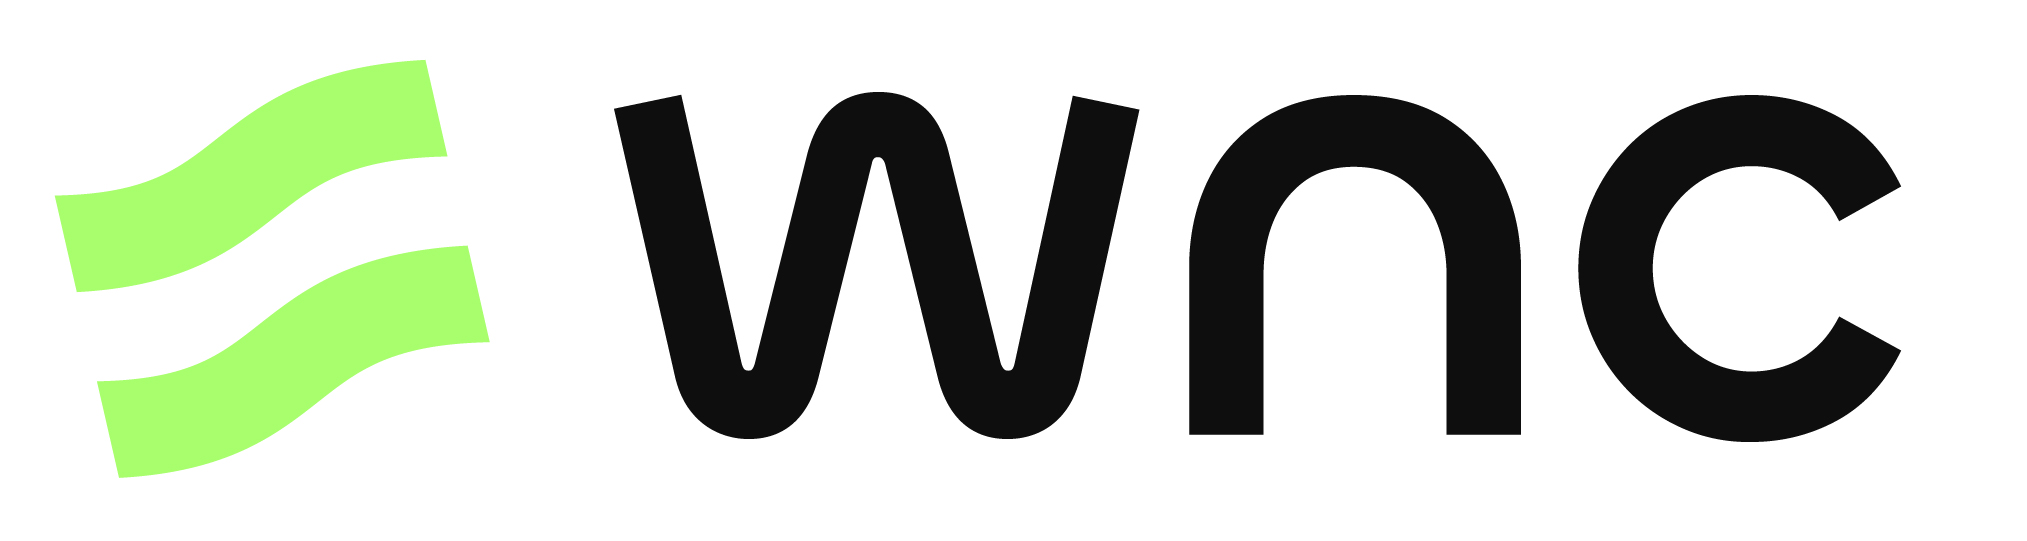 WENANCE Logo